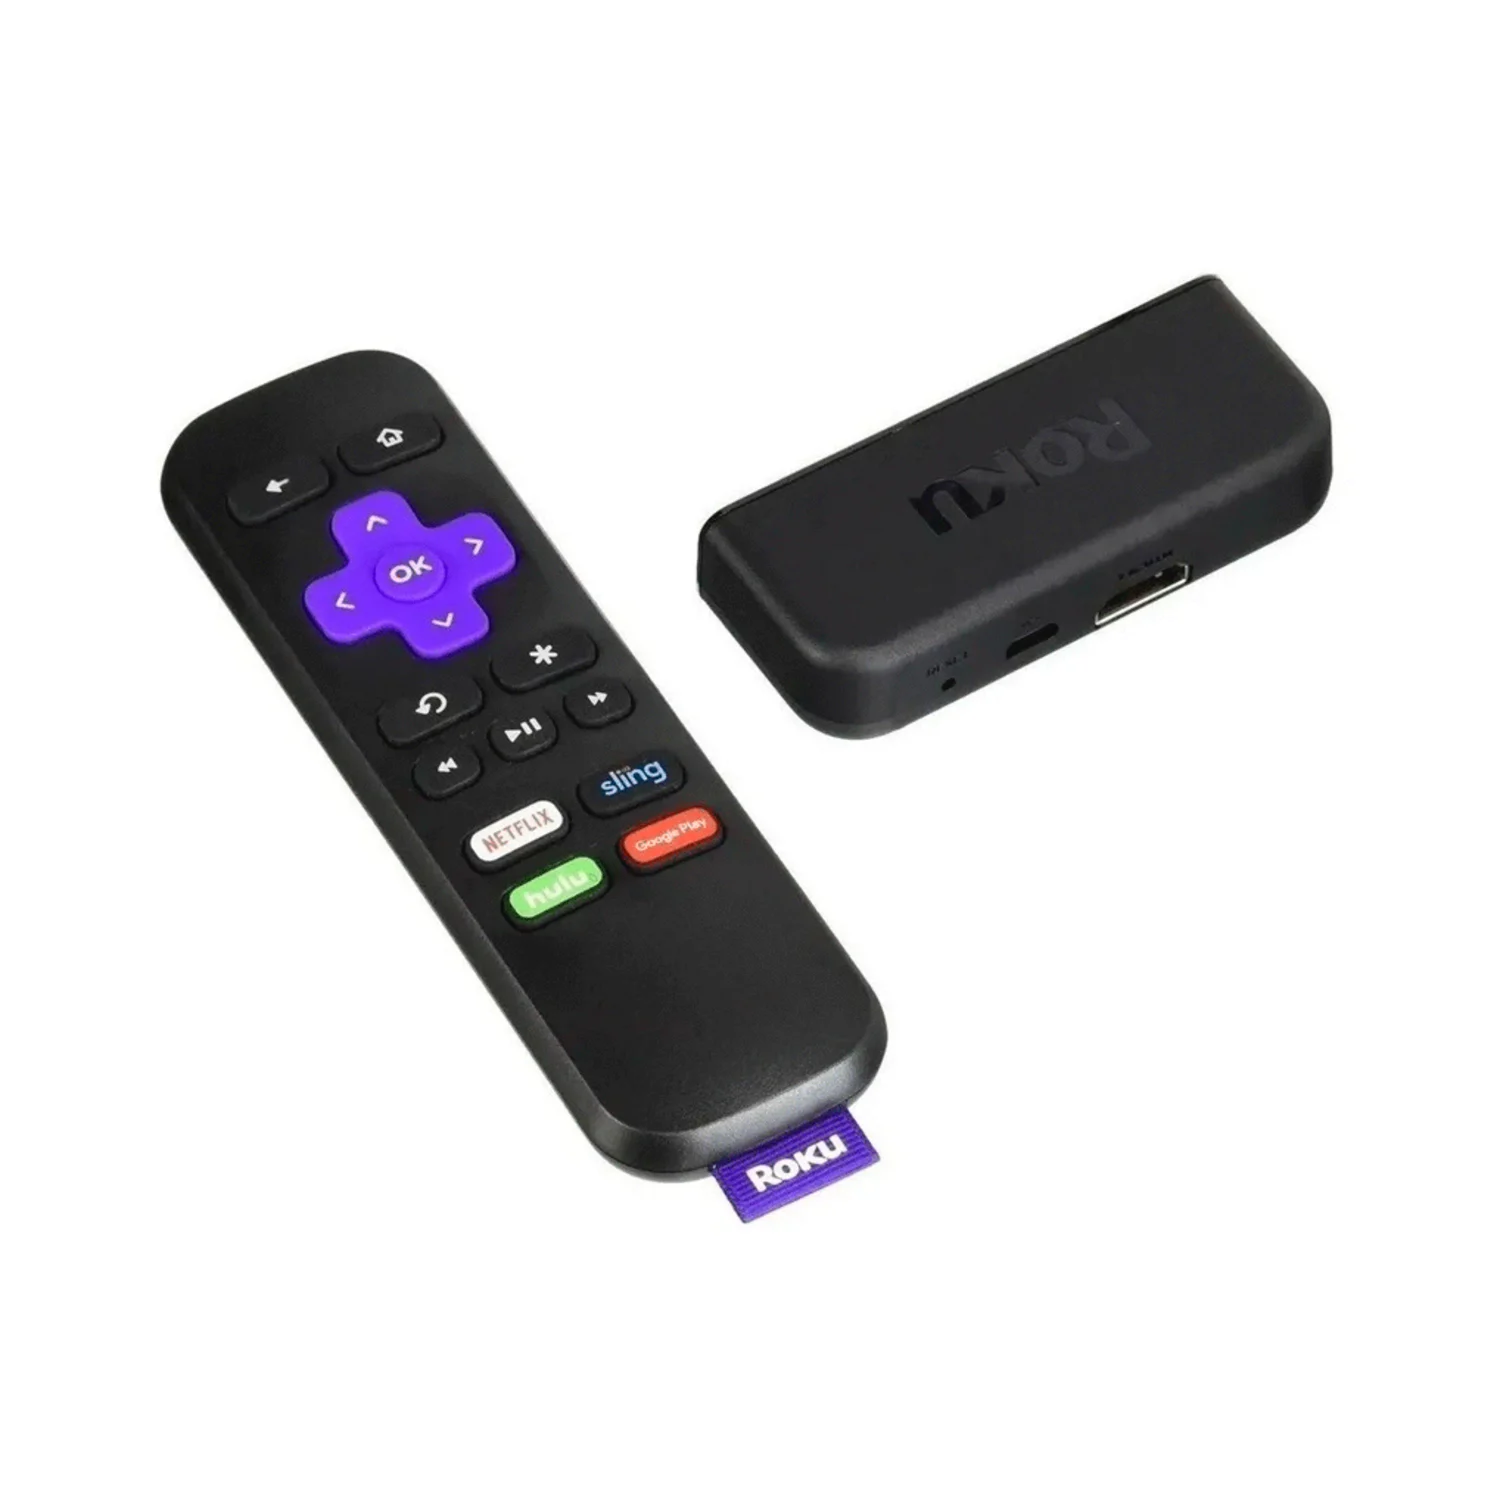 Media Player Roku Express Streaming HD / HDMI / Wifi - Preto (3930MX)